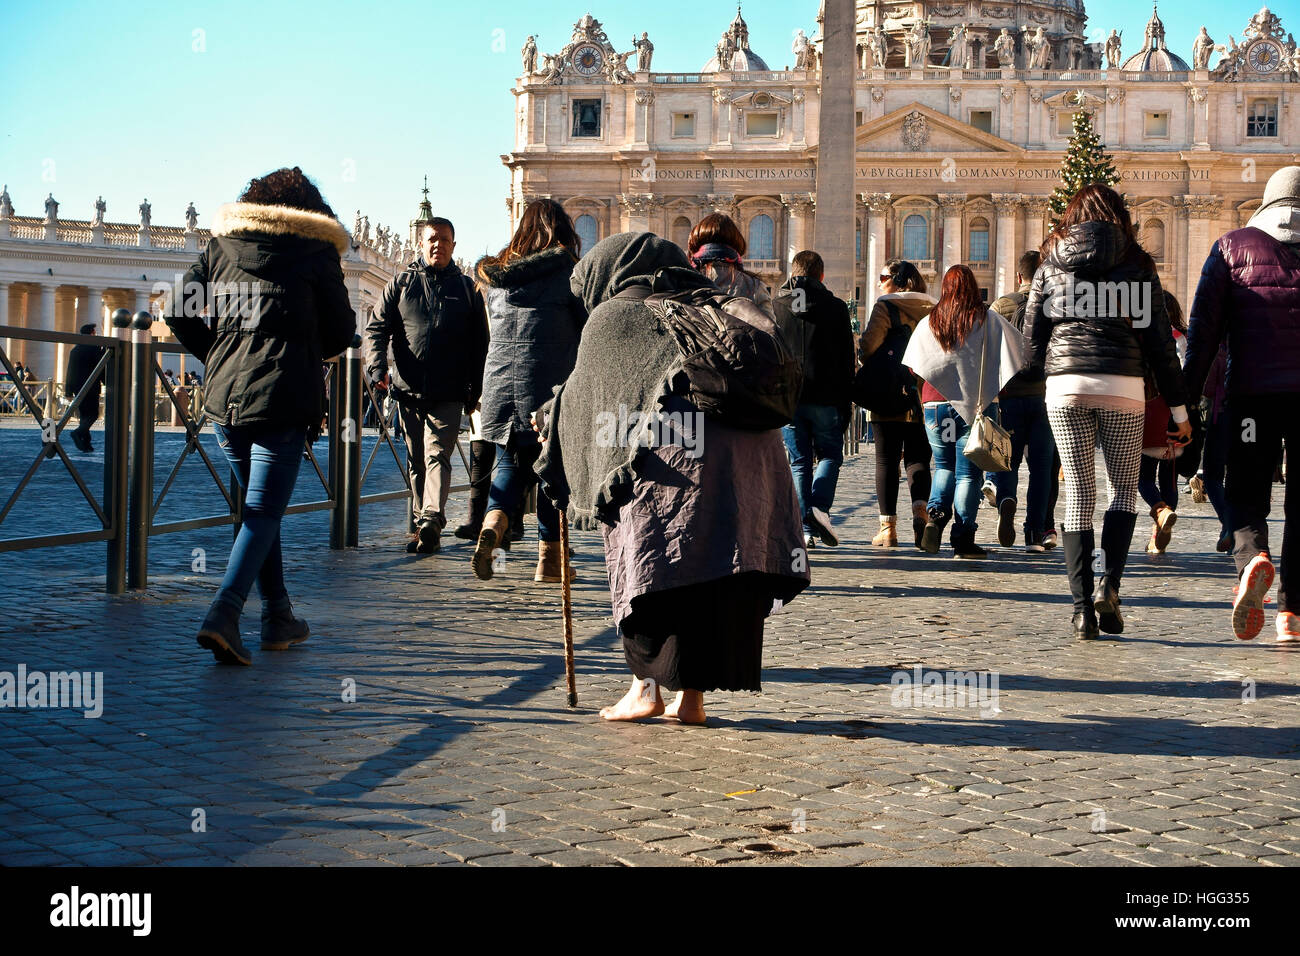 Mendiant non identifié mendiant parmi une foule de gens passant par la place Saint-Pierre. Vatican, Rome, Italie, Europe, Union européenne, UE. Banque D'Images